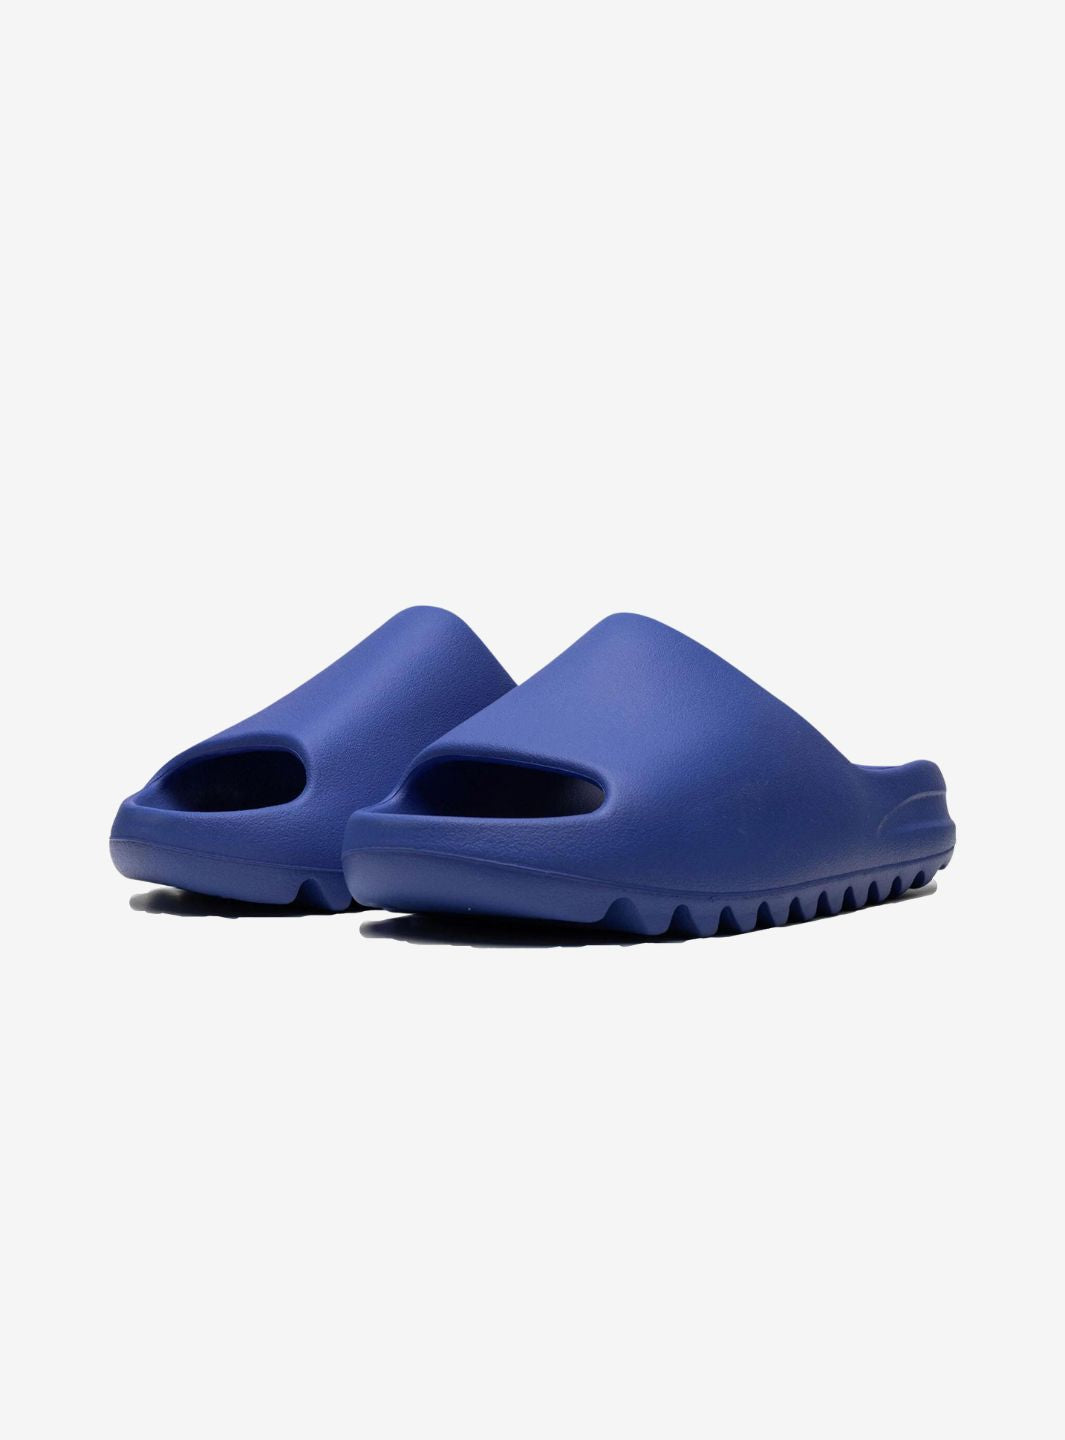 Adidas Yeezy Slide Azure - ID4133 | ResellZone